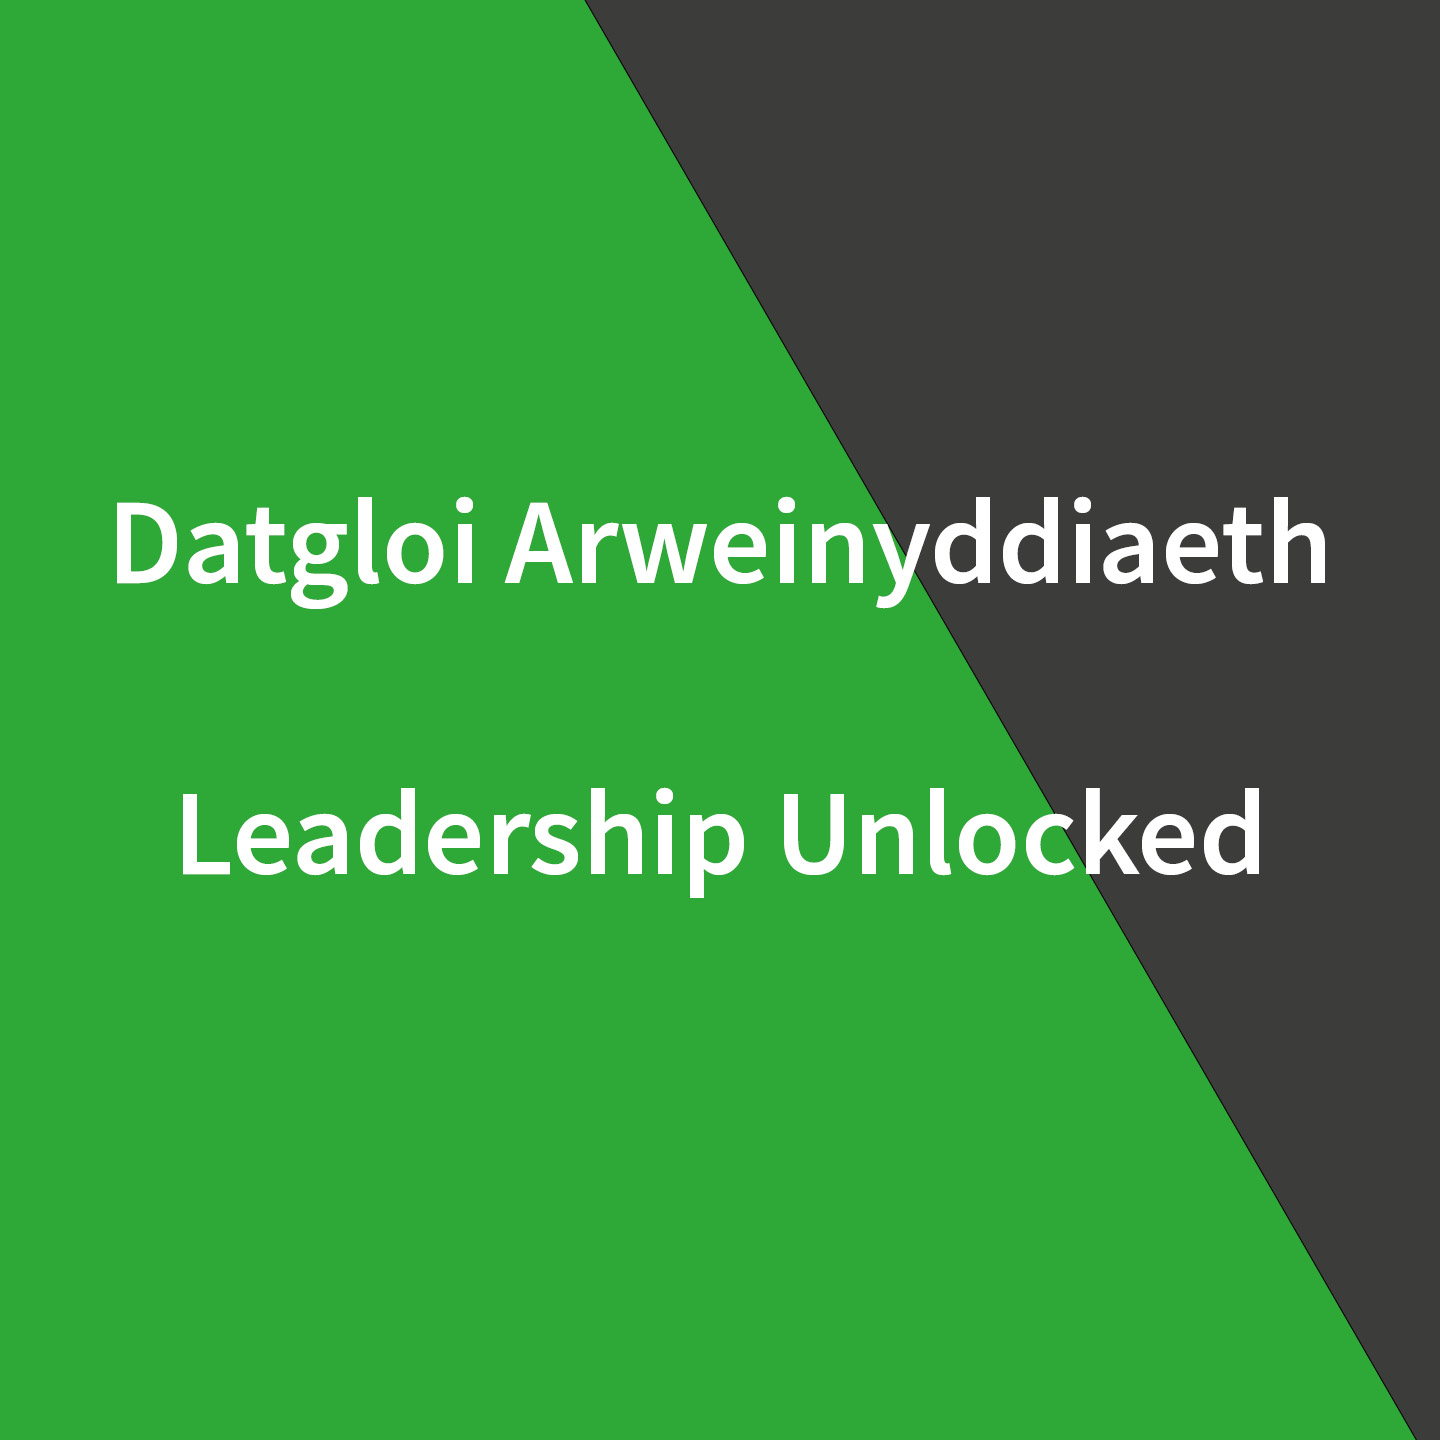 Leadership Unlocked: Stuart Davies